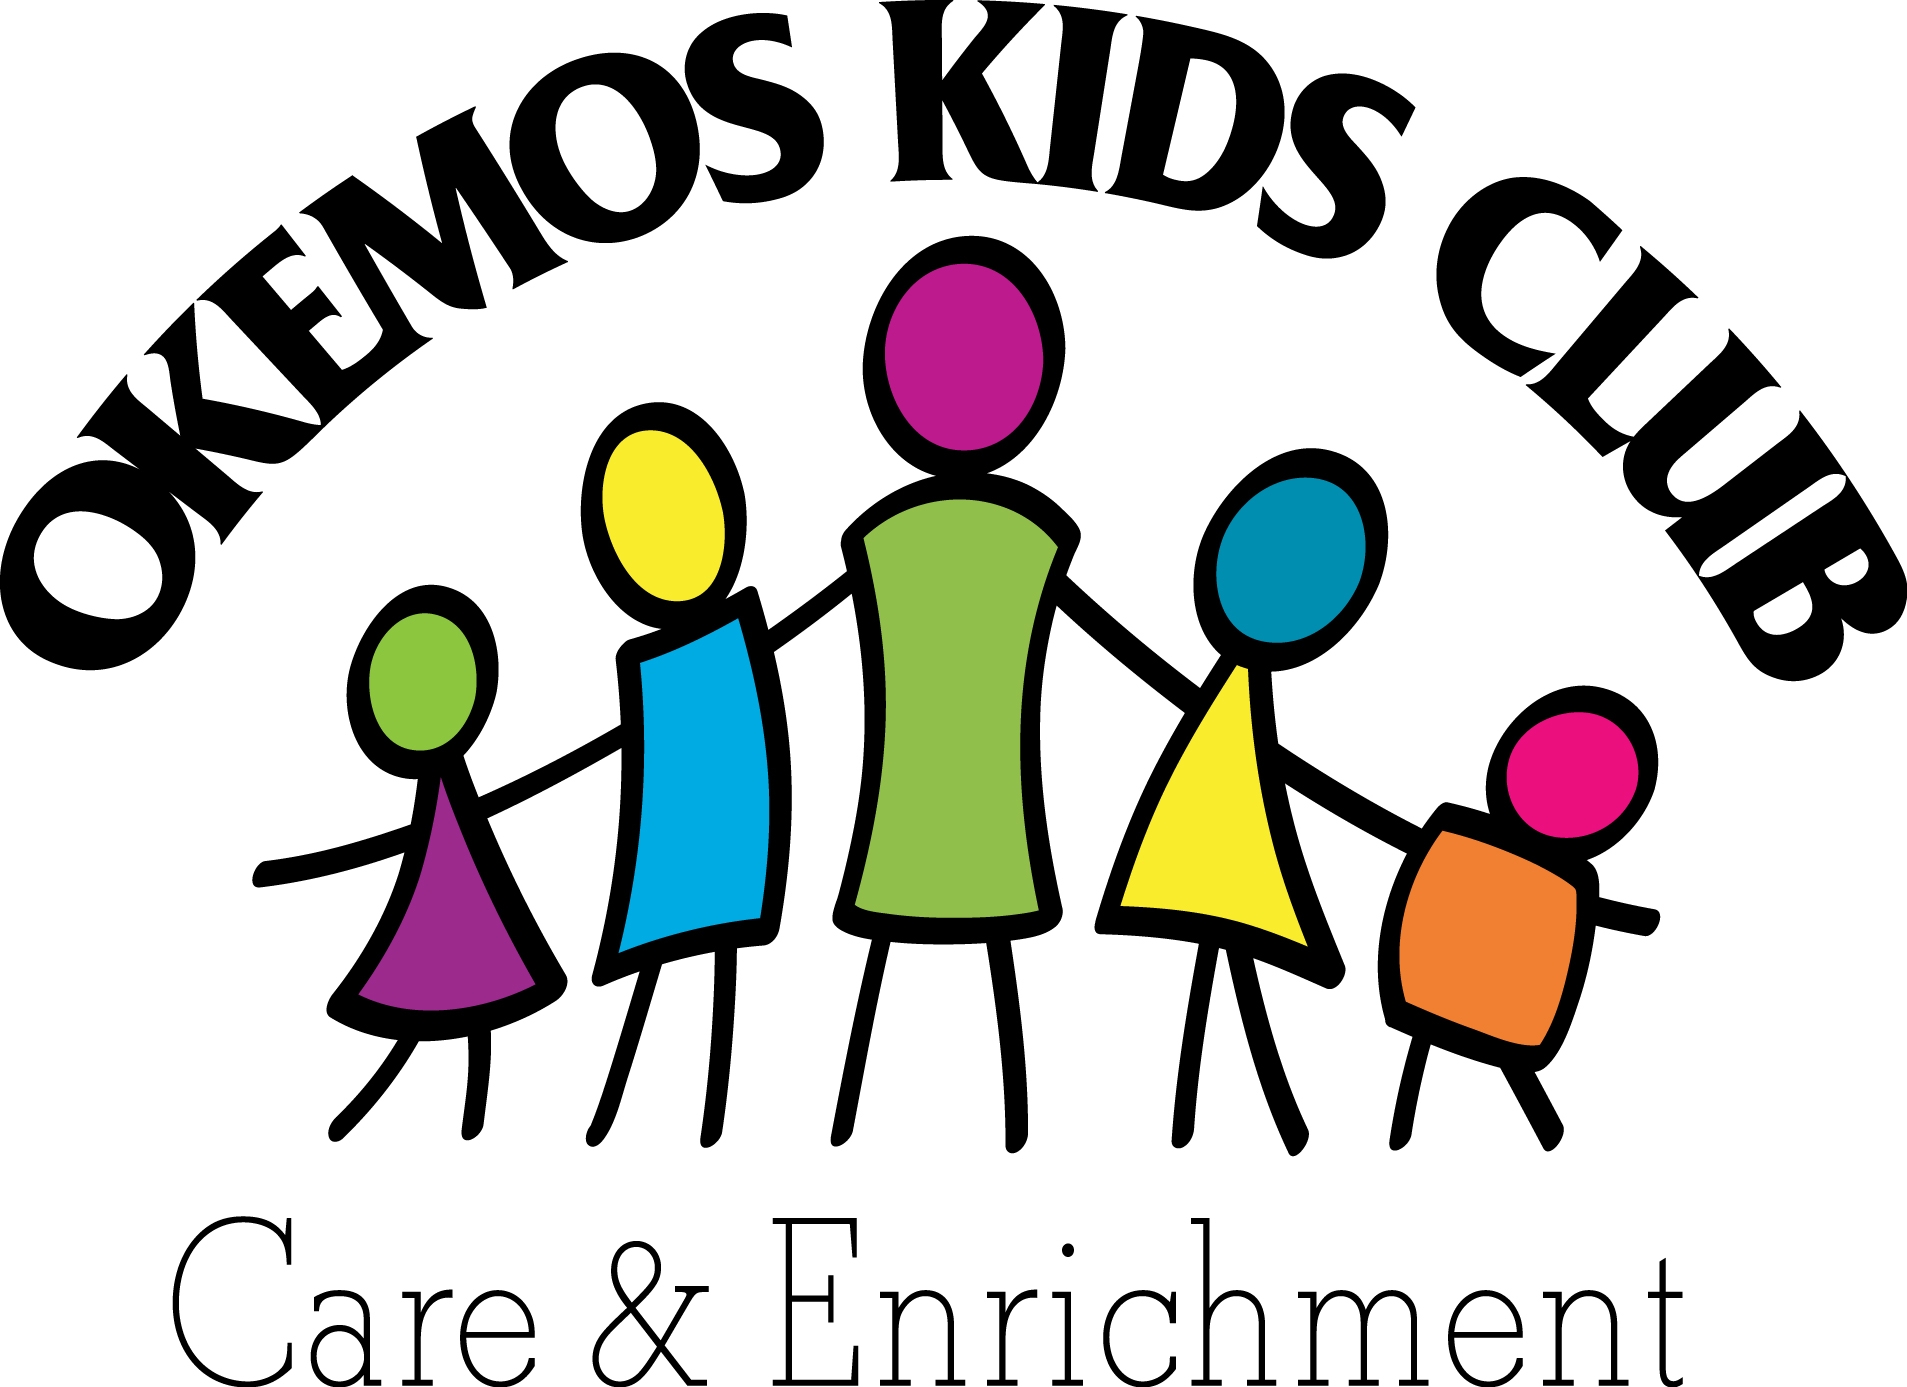 OKEMOS KIDS CLUB CENTRAL